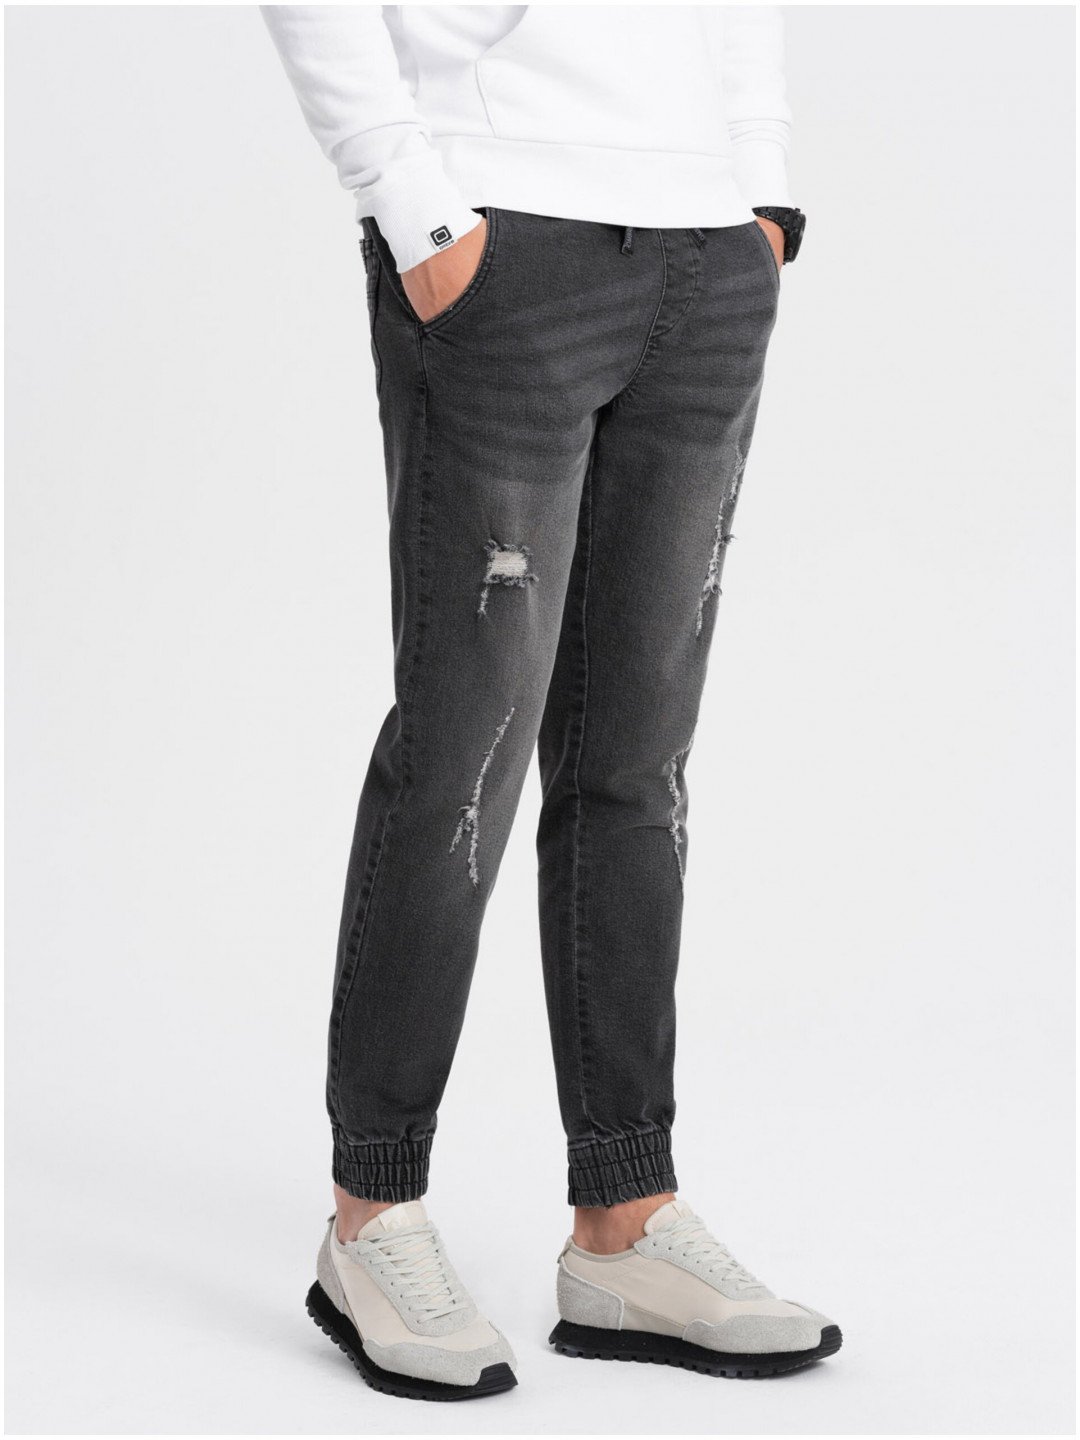 Tmavě šedé pánské džíny s potrhaným efektem Ombre Clothing